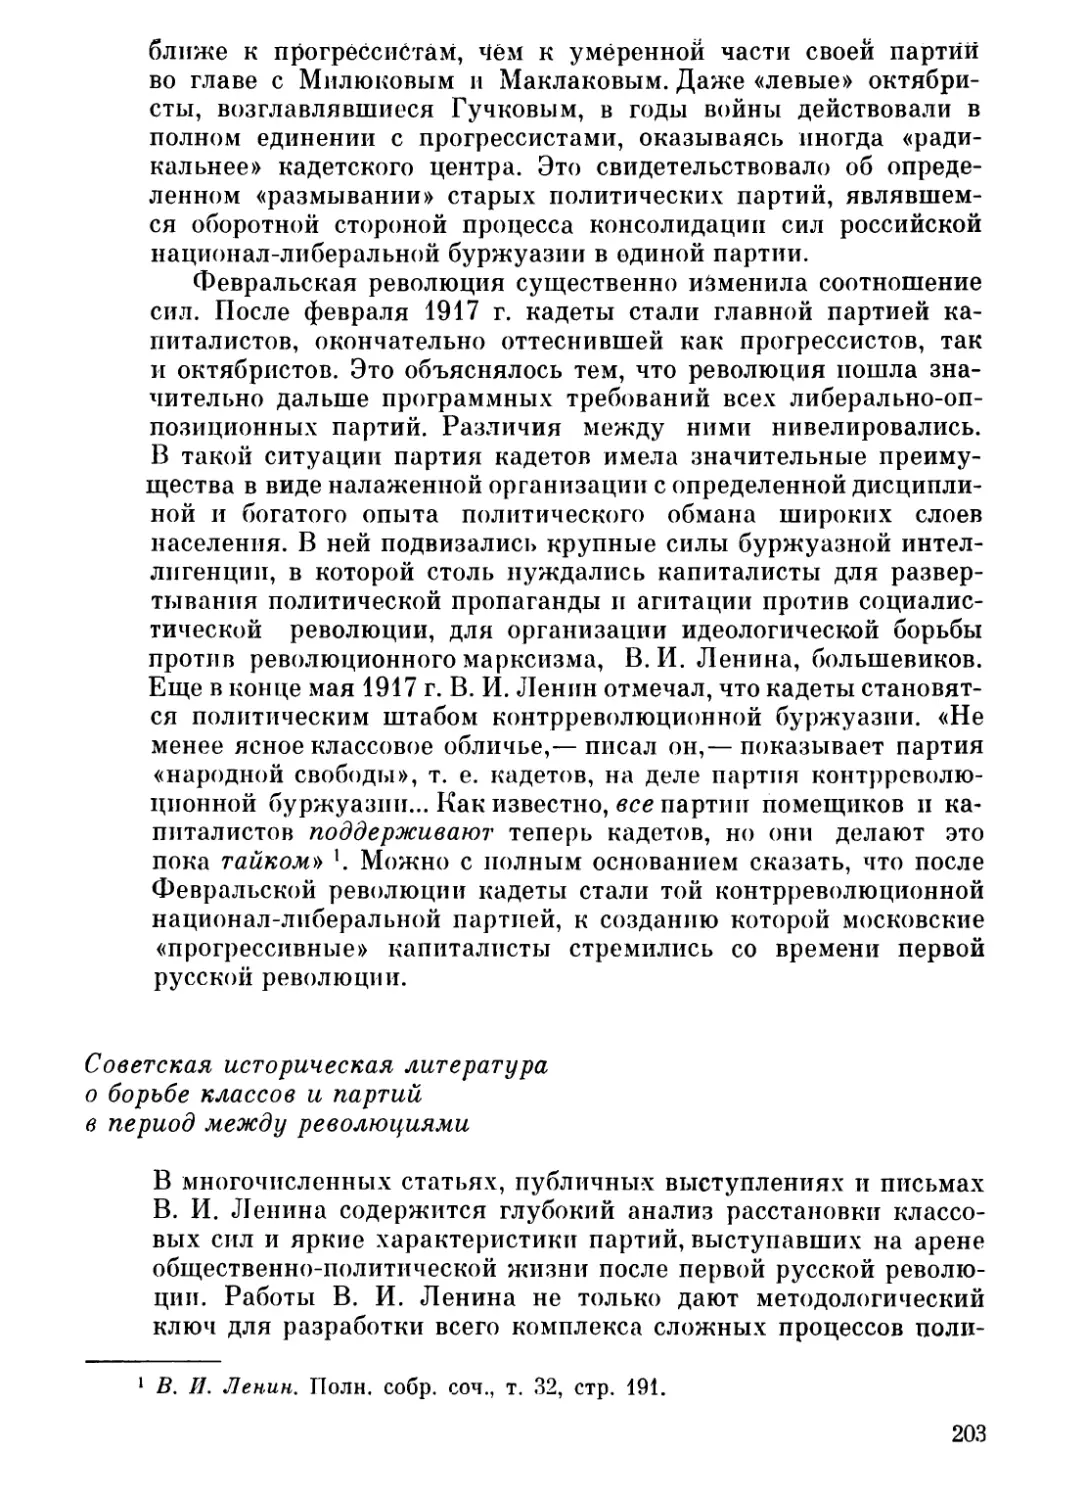 Советская историческая литература о борьбе классов и партий в период между революциями